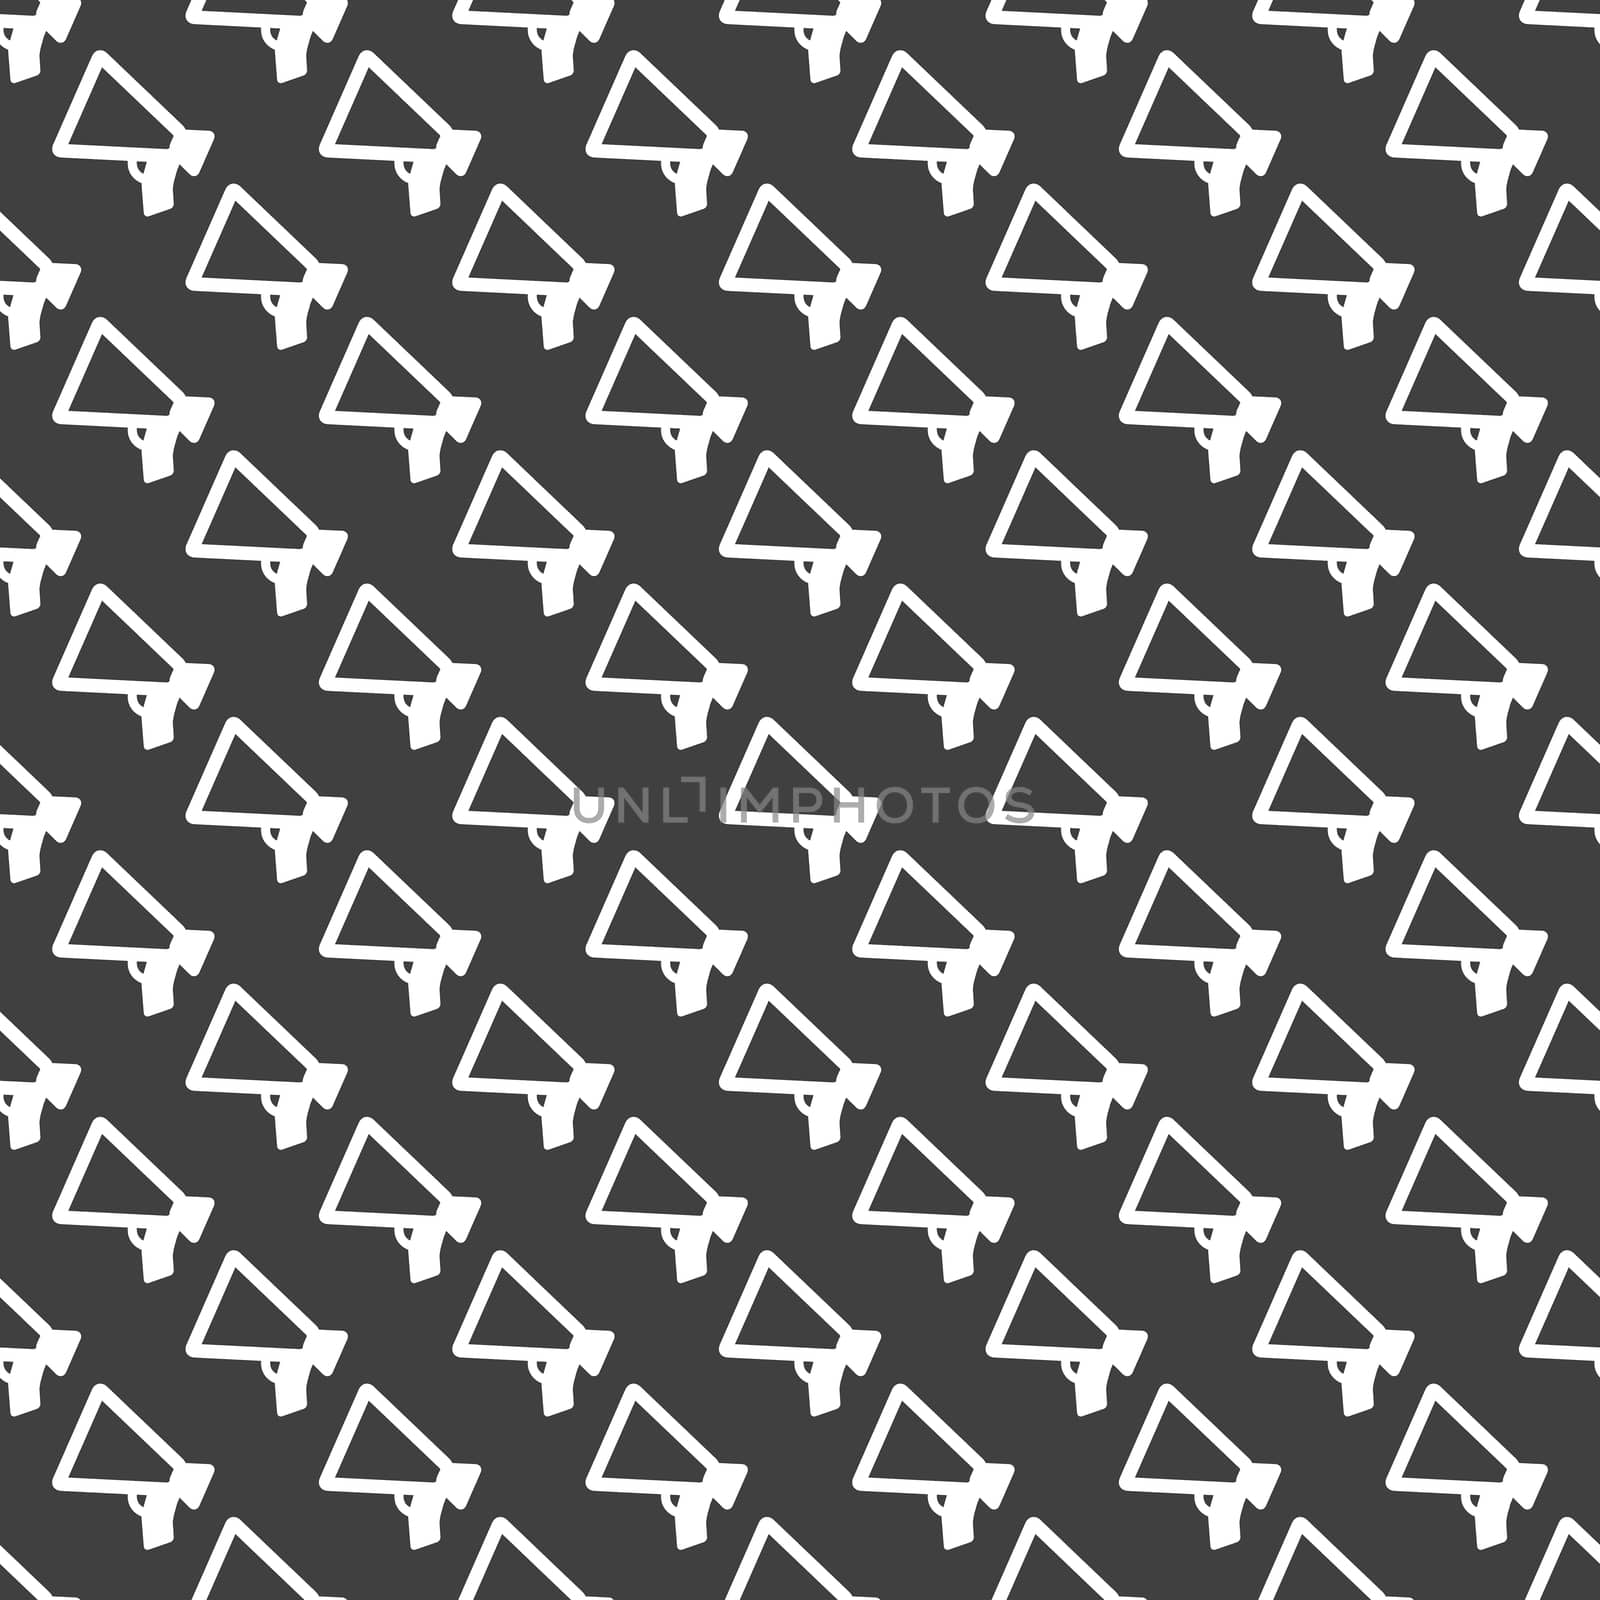 Mouthpiece. web icon. flat design. Seamless pattern. by serhii_lohvyniuk